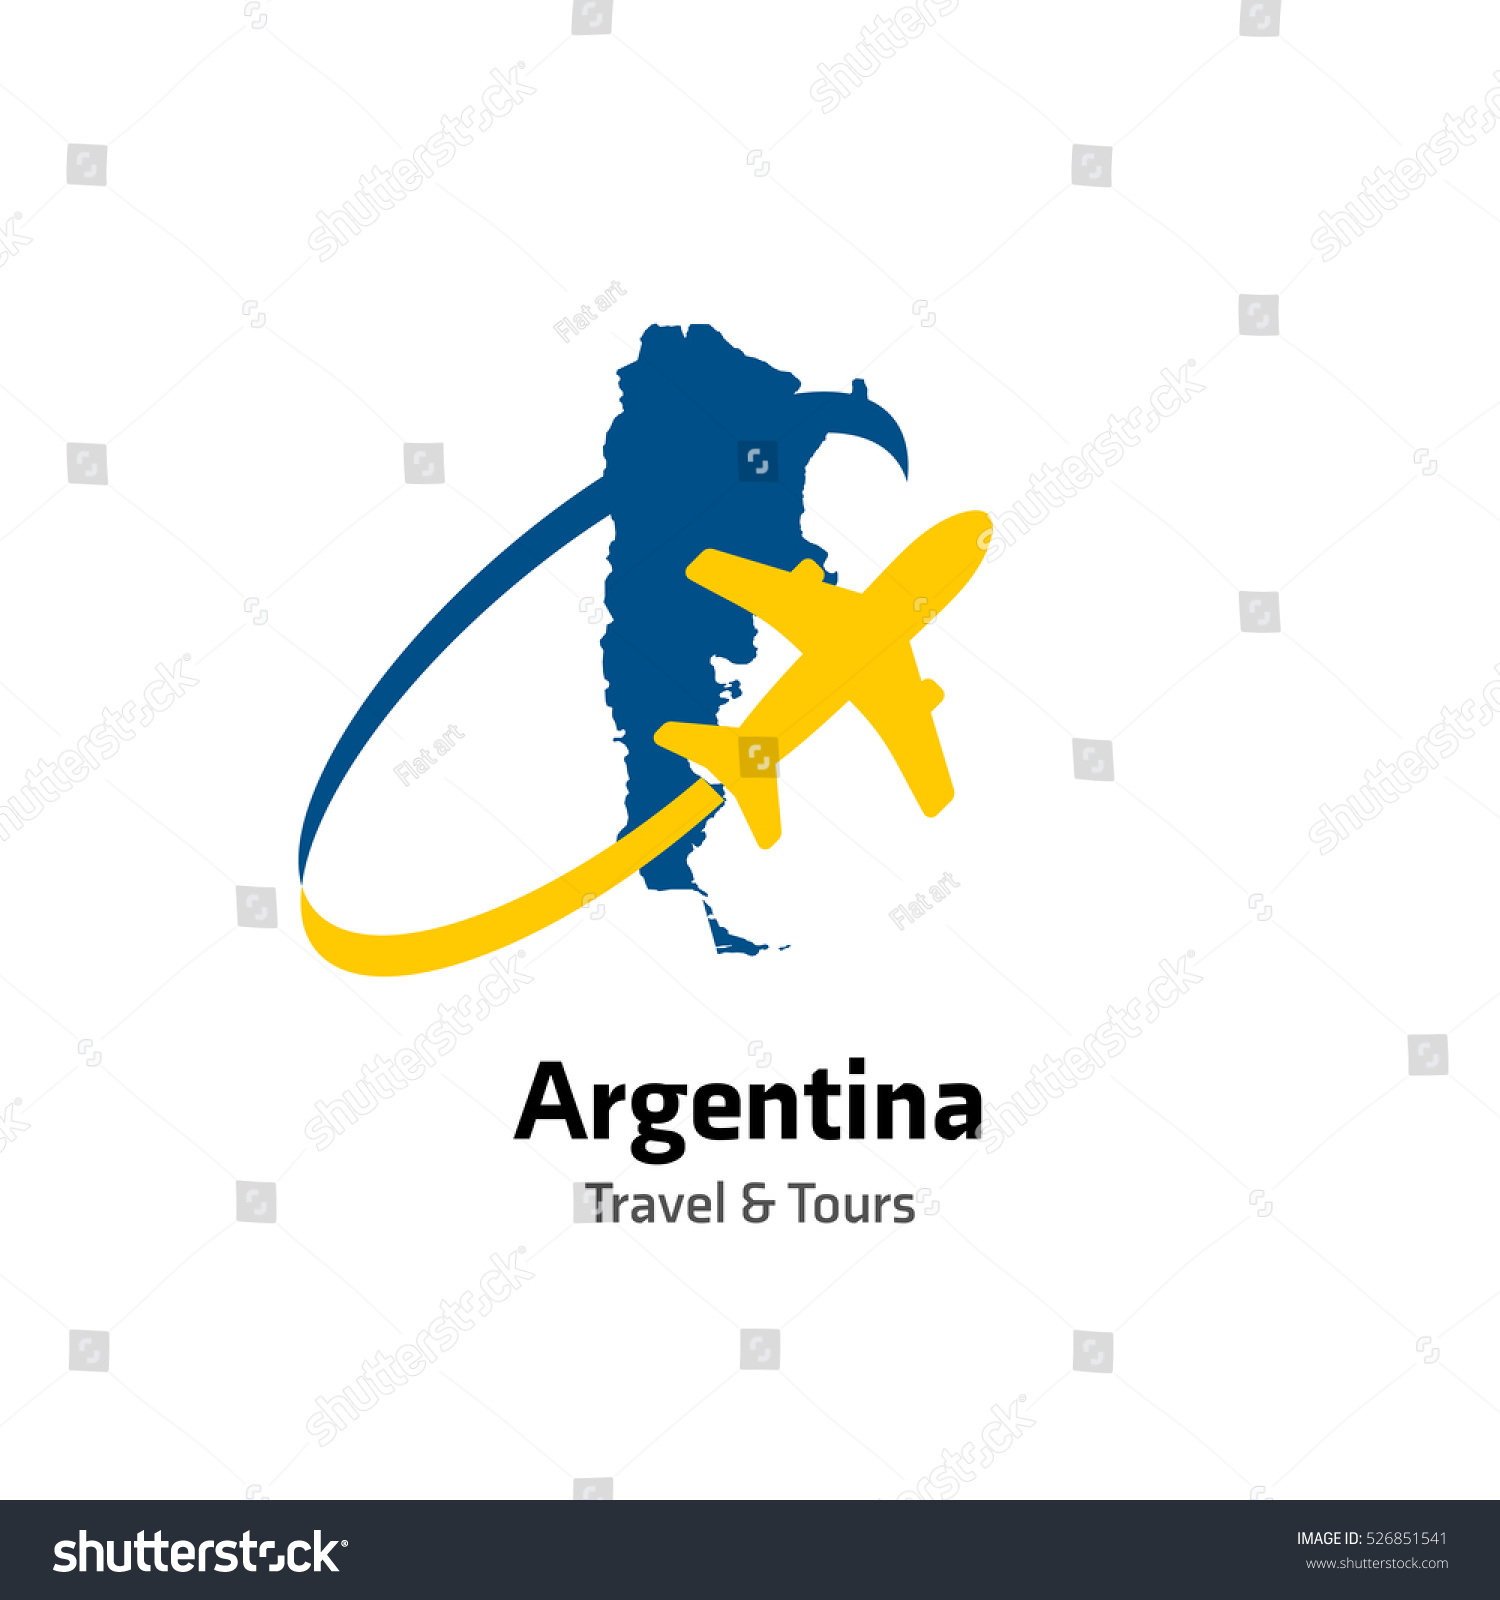 logos tour argentyna